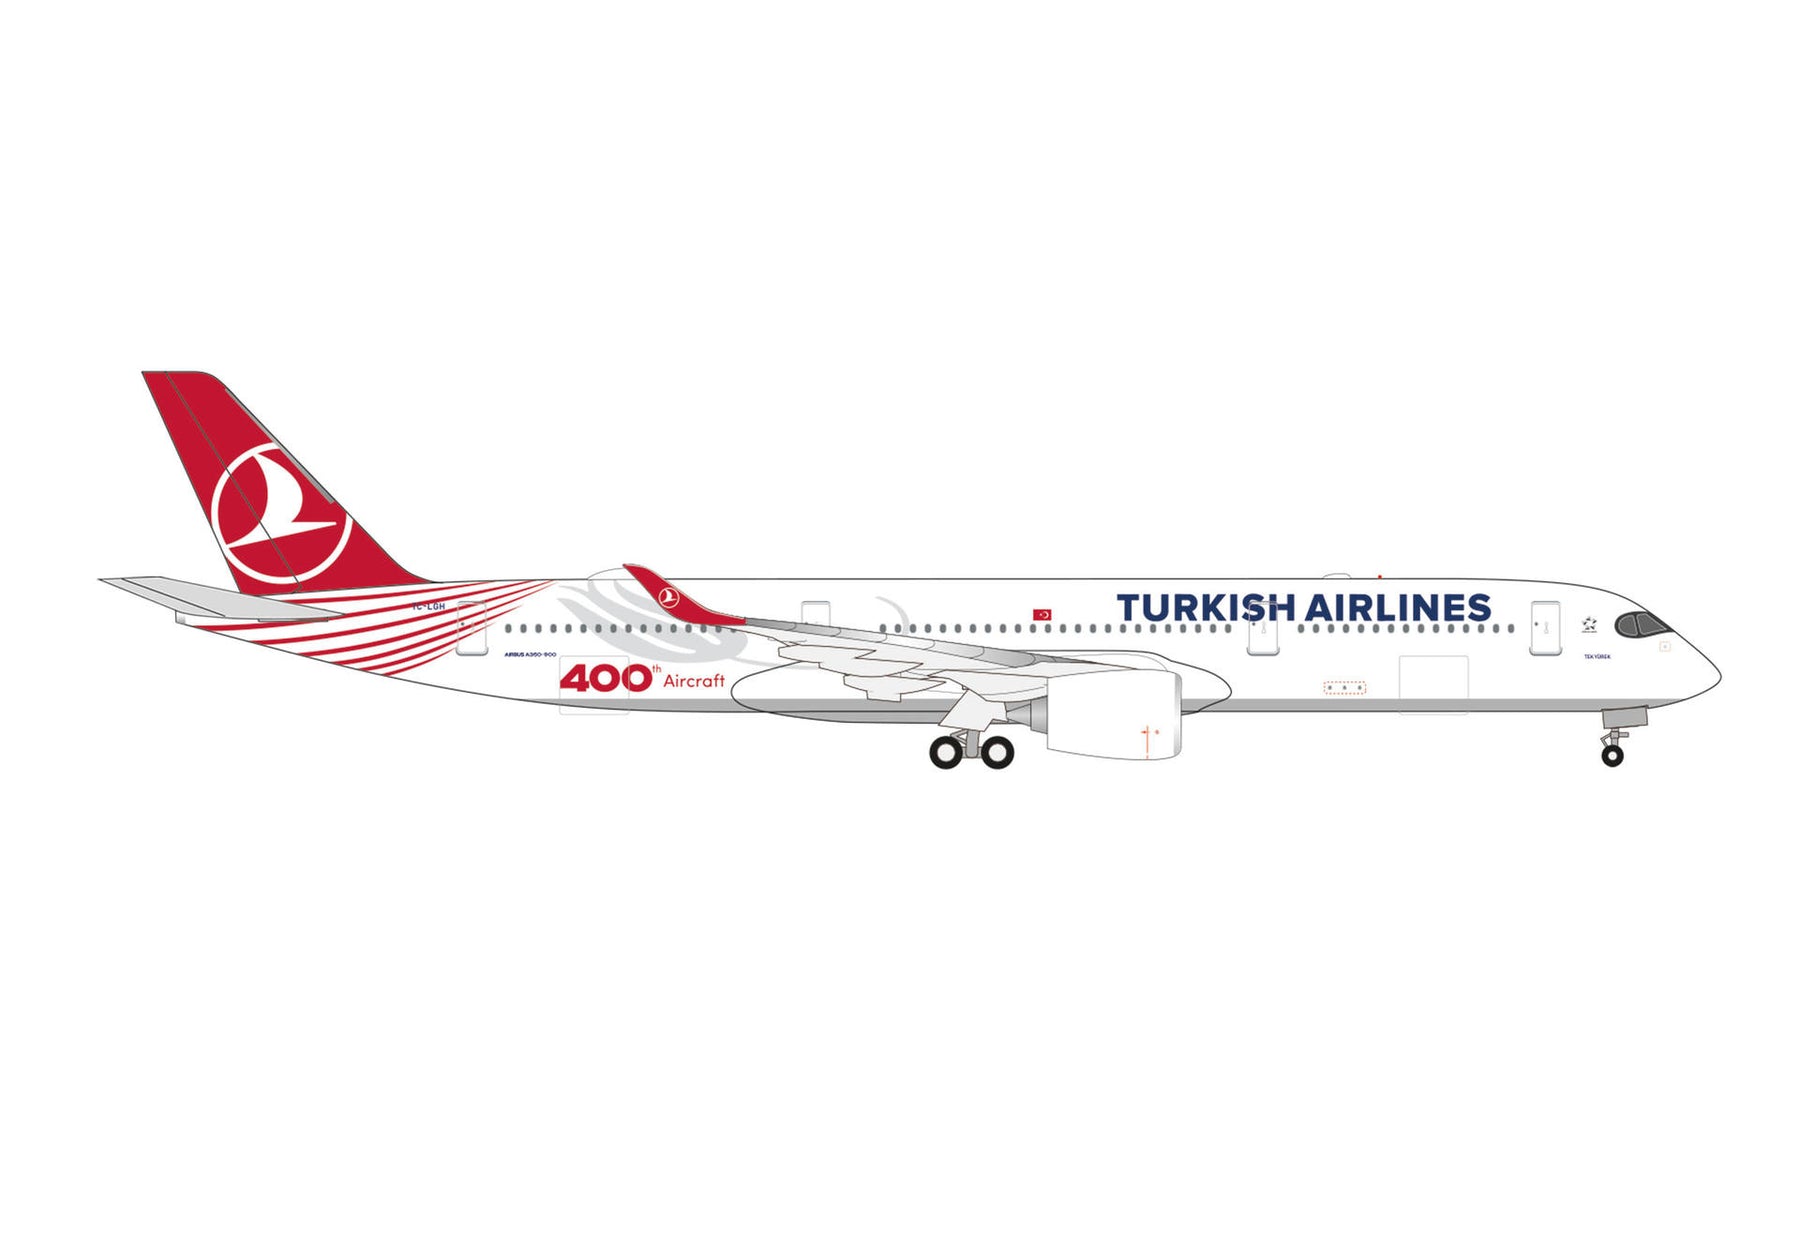 【予約商品】A350-900 ターキッシュ・エアラインズ “400th Aircraft” “Tek Yurek” TC-LGH 1/500 (HE20231020) [537230]